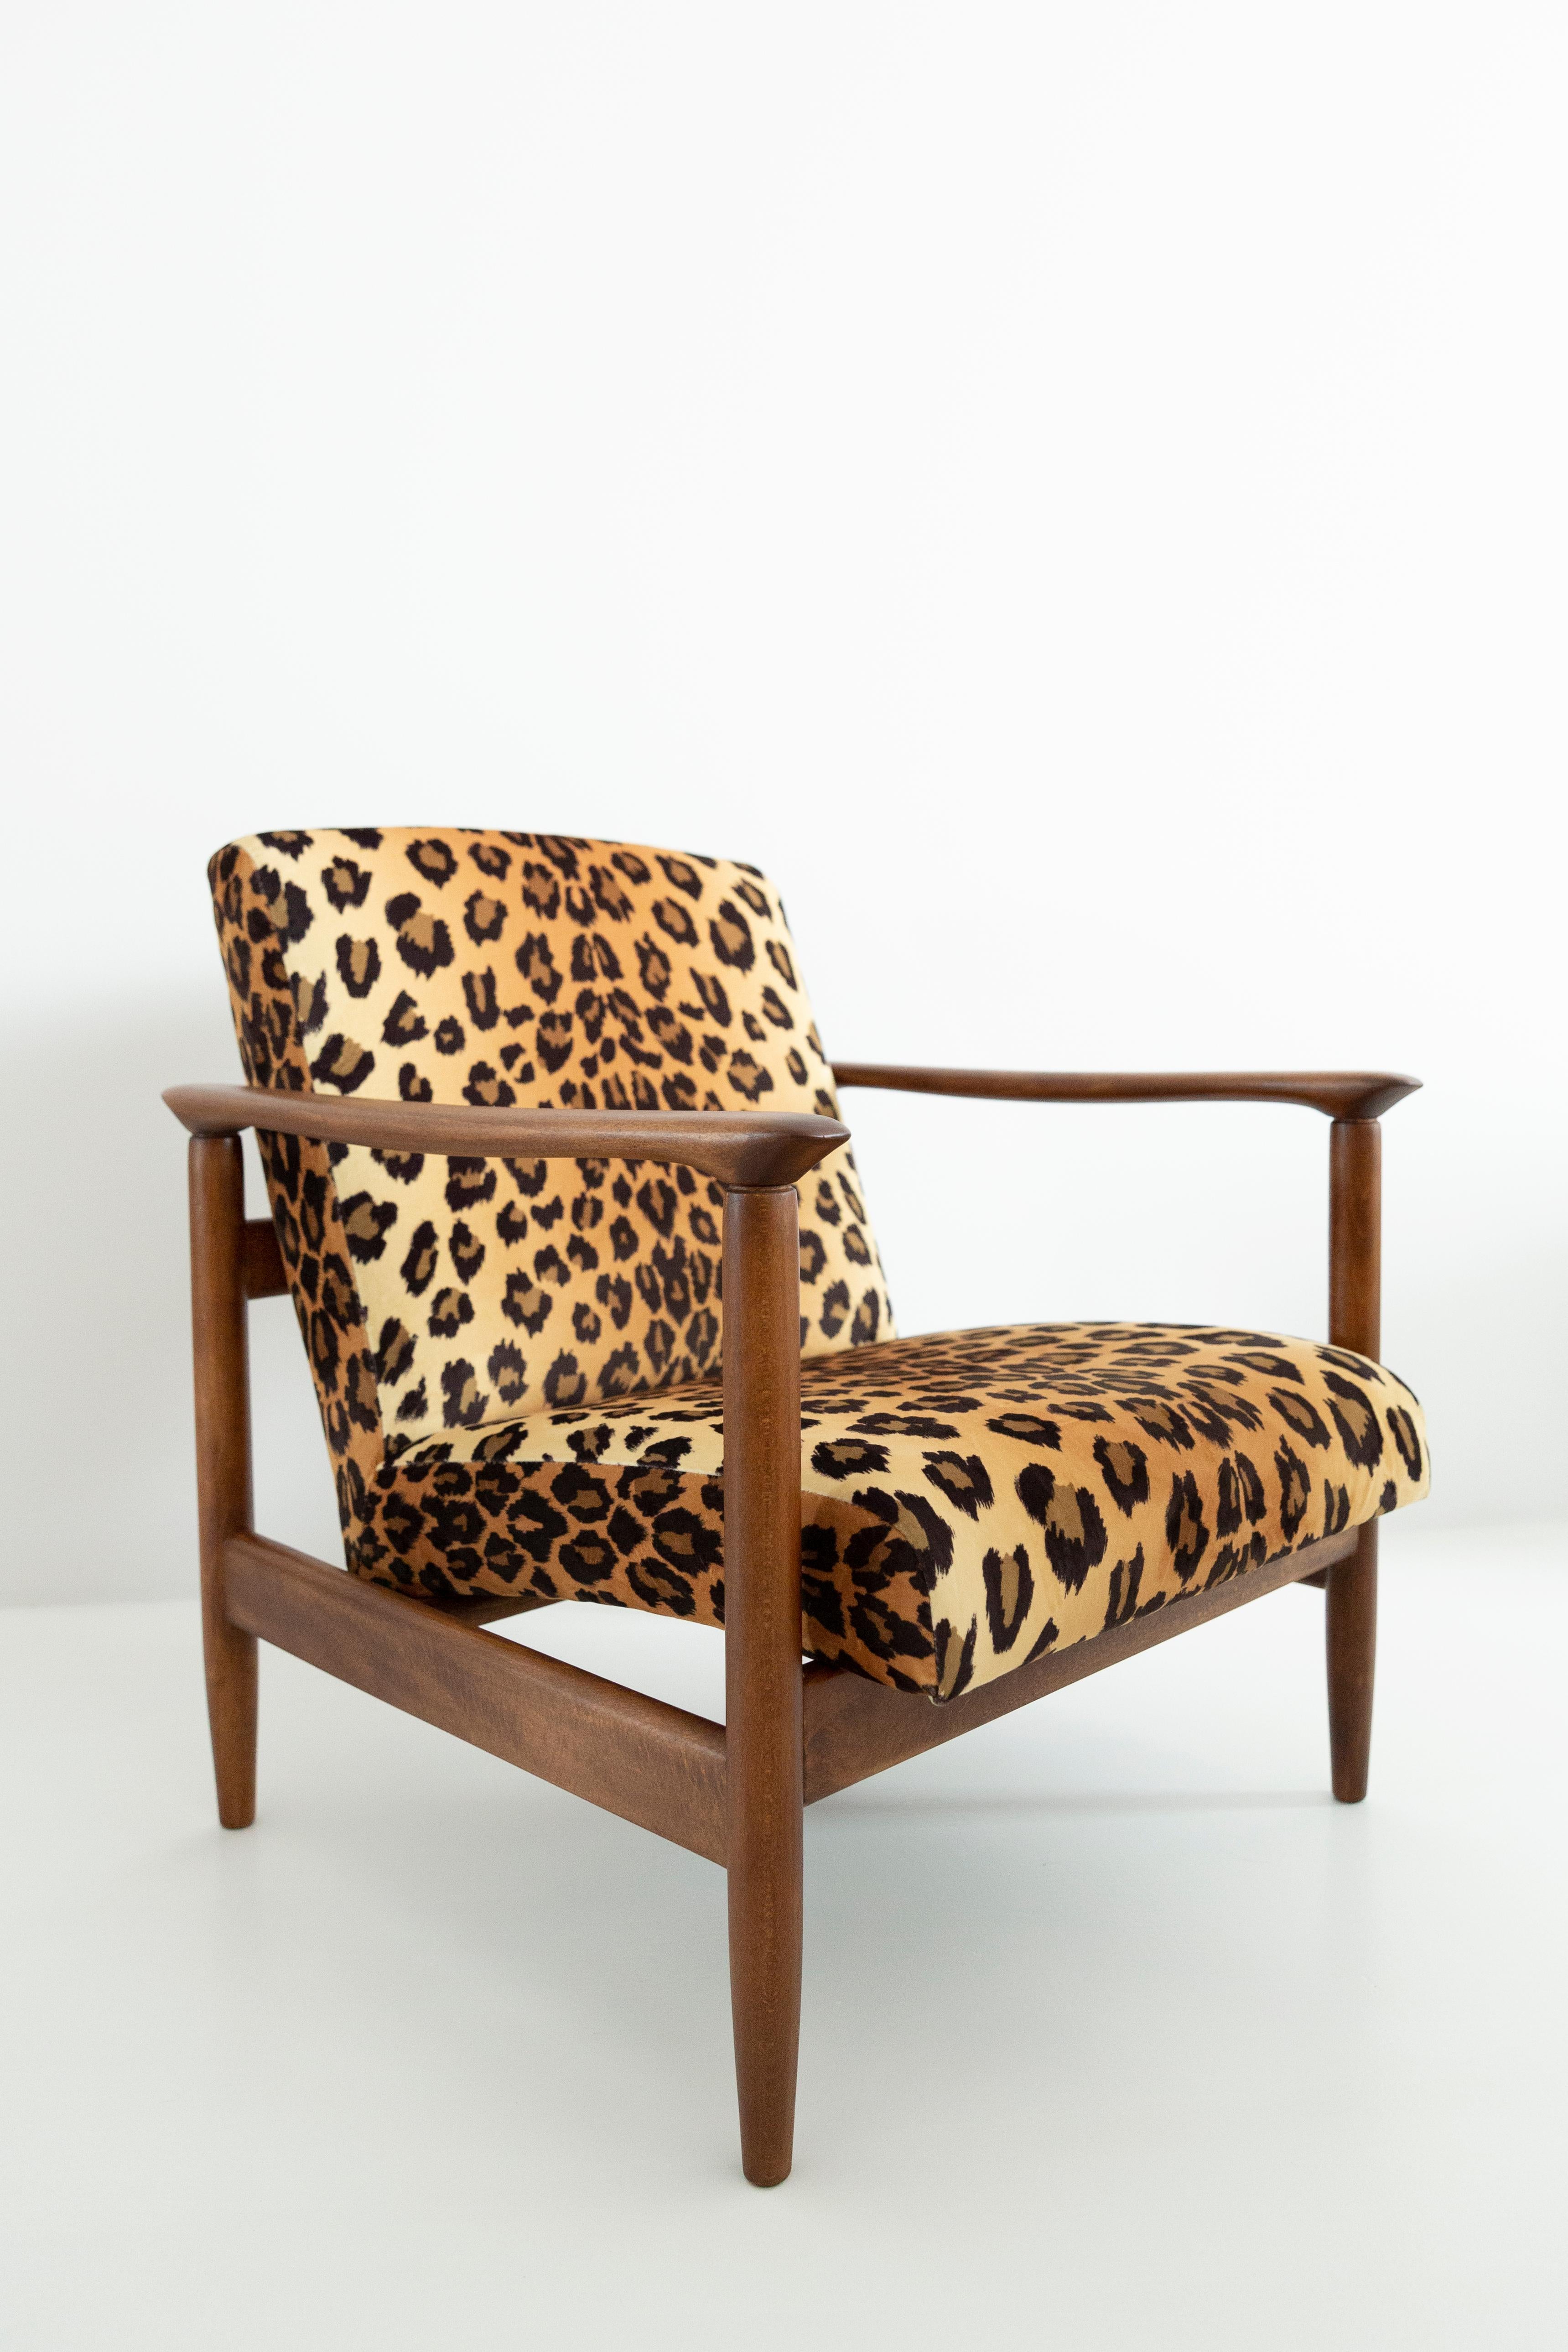 Textile Set of Two Leopard Print Velvet Armchairs, Edmund Homa, GFM-142, 1960s, Poland For Sale